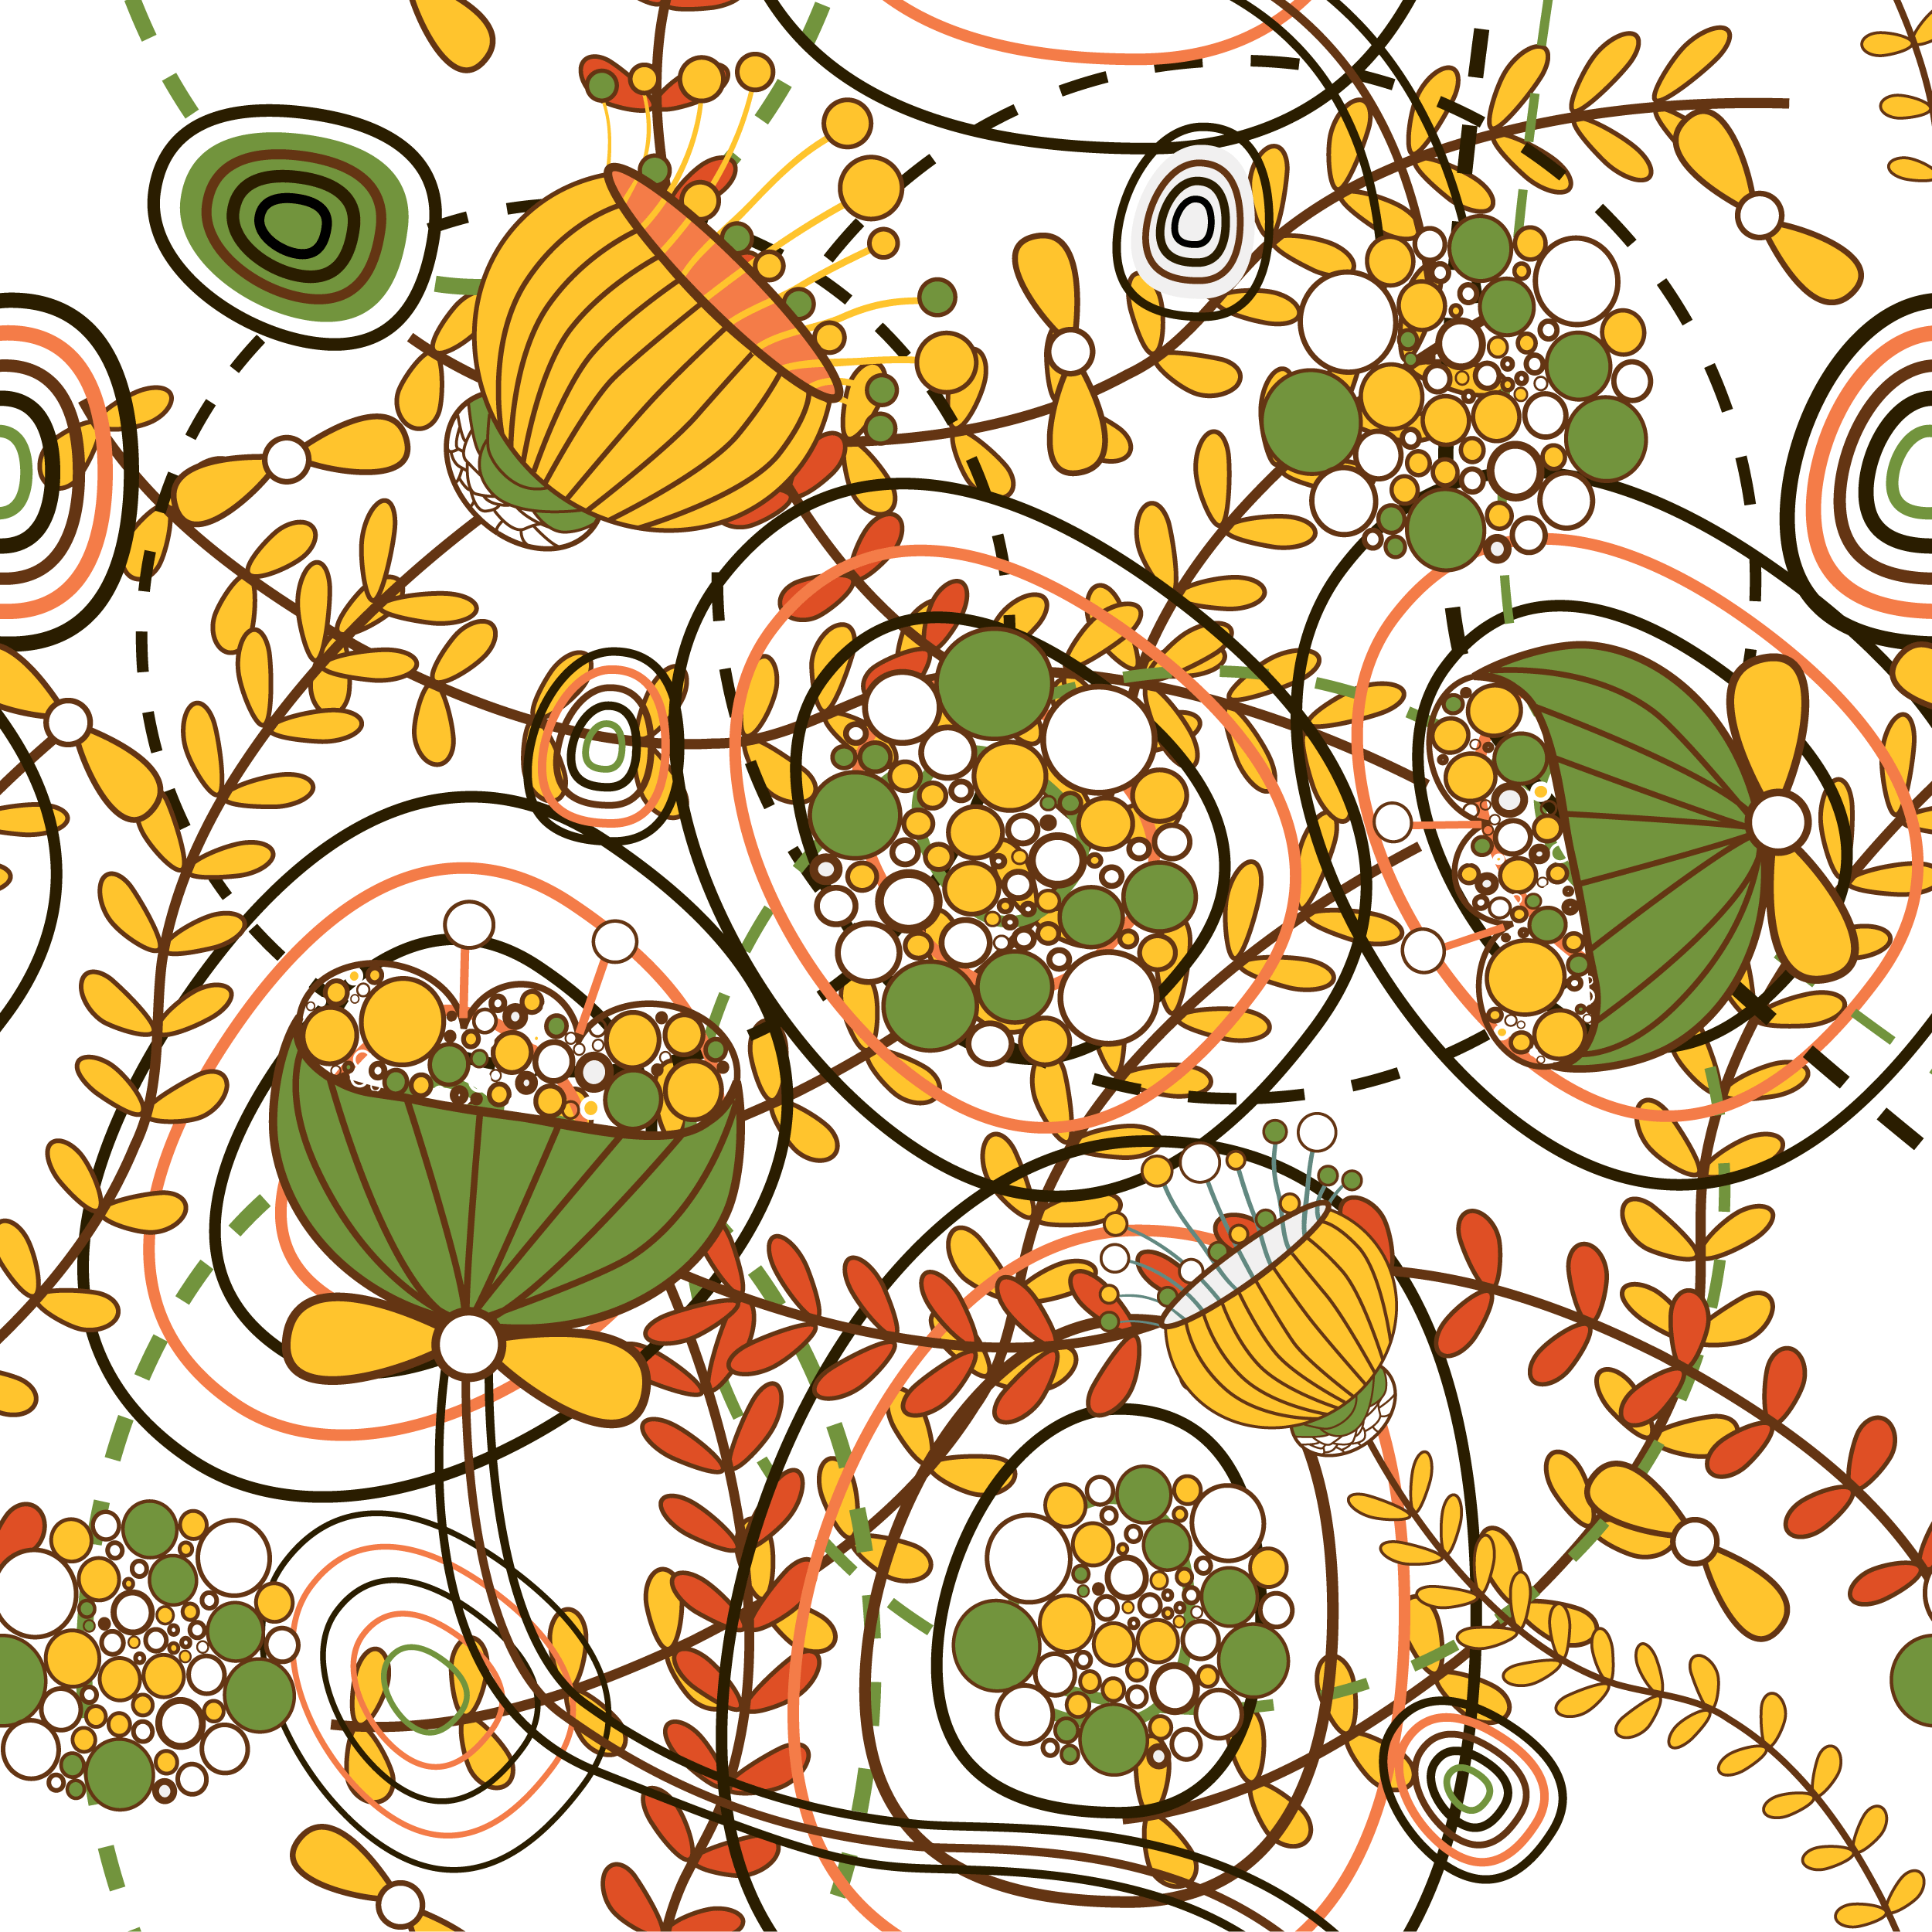 壁紙 背景イラスト 花の模様 柄 パターン No 162 ポップアート 茎葉